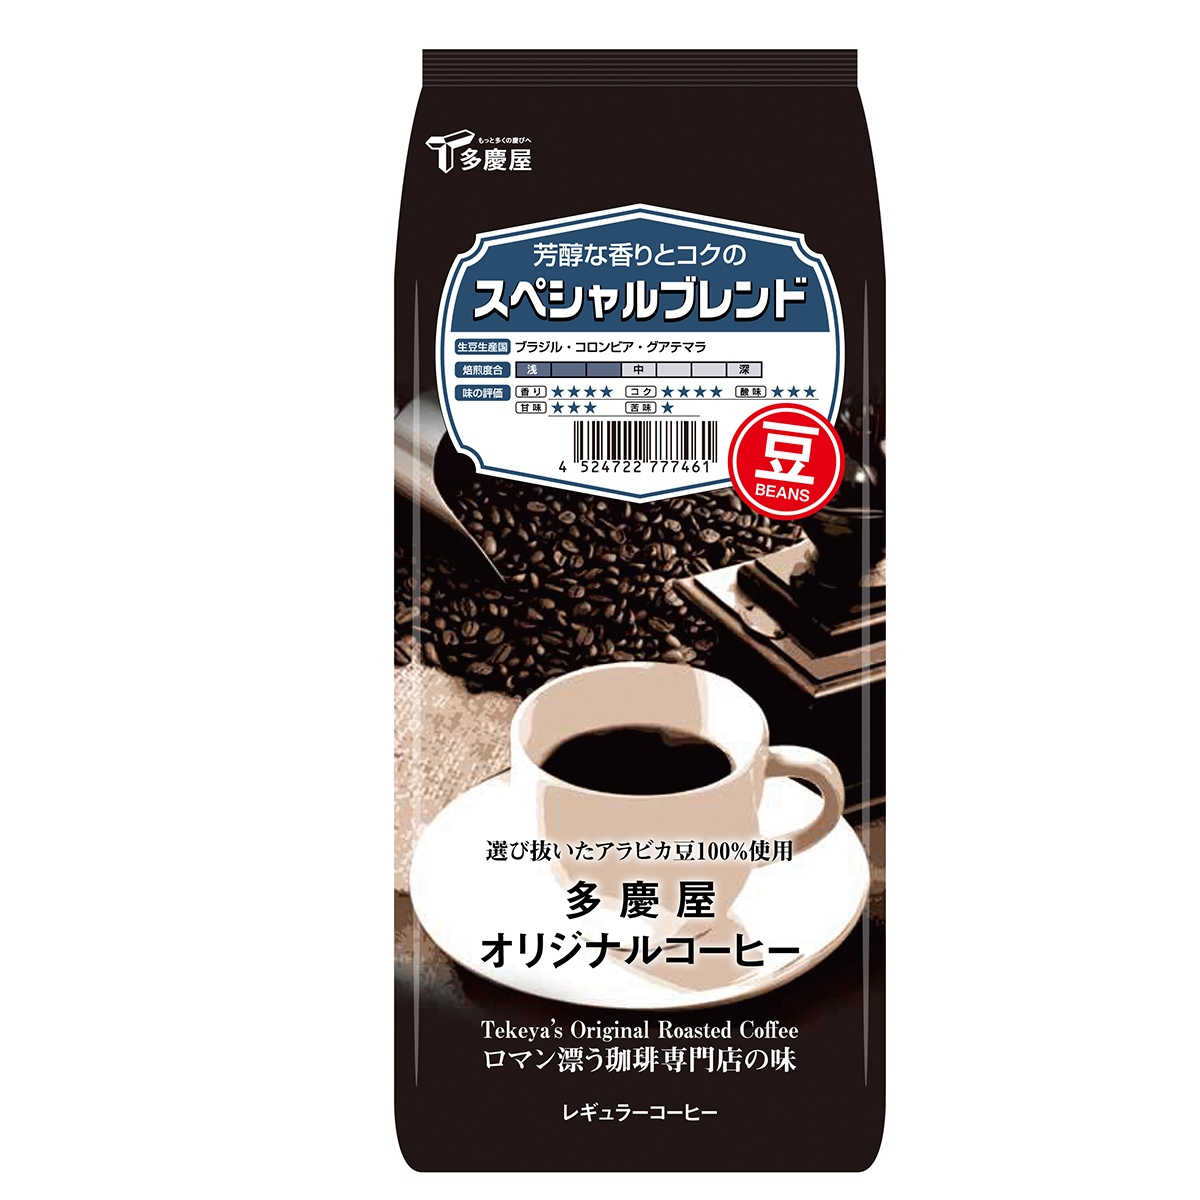 スペシャルブレンド豆150g　多慶屋オリジナルコーヒーコーヒー豆レギュラーコーヒー